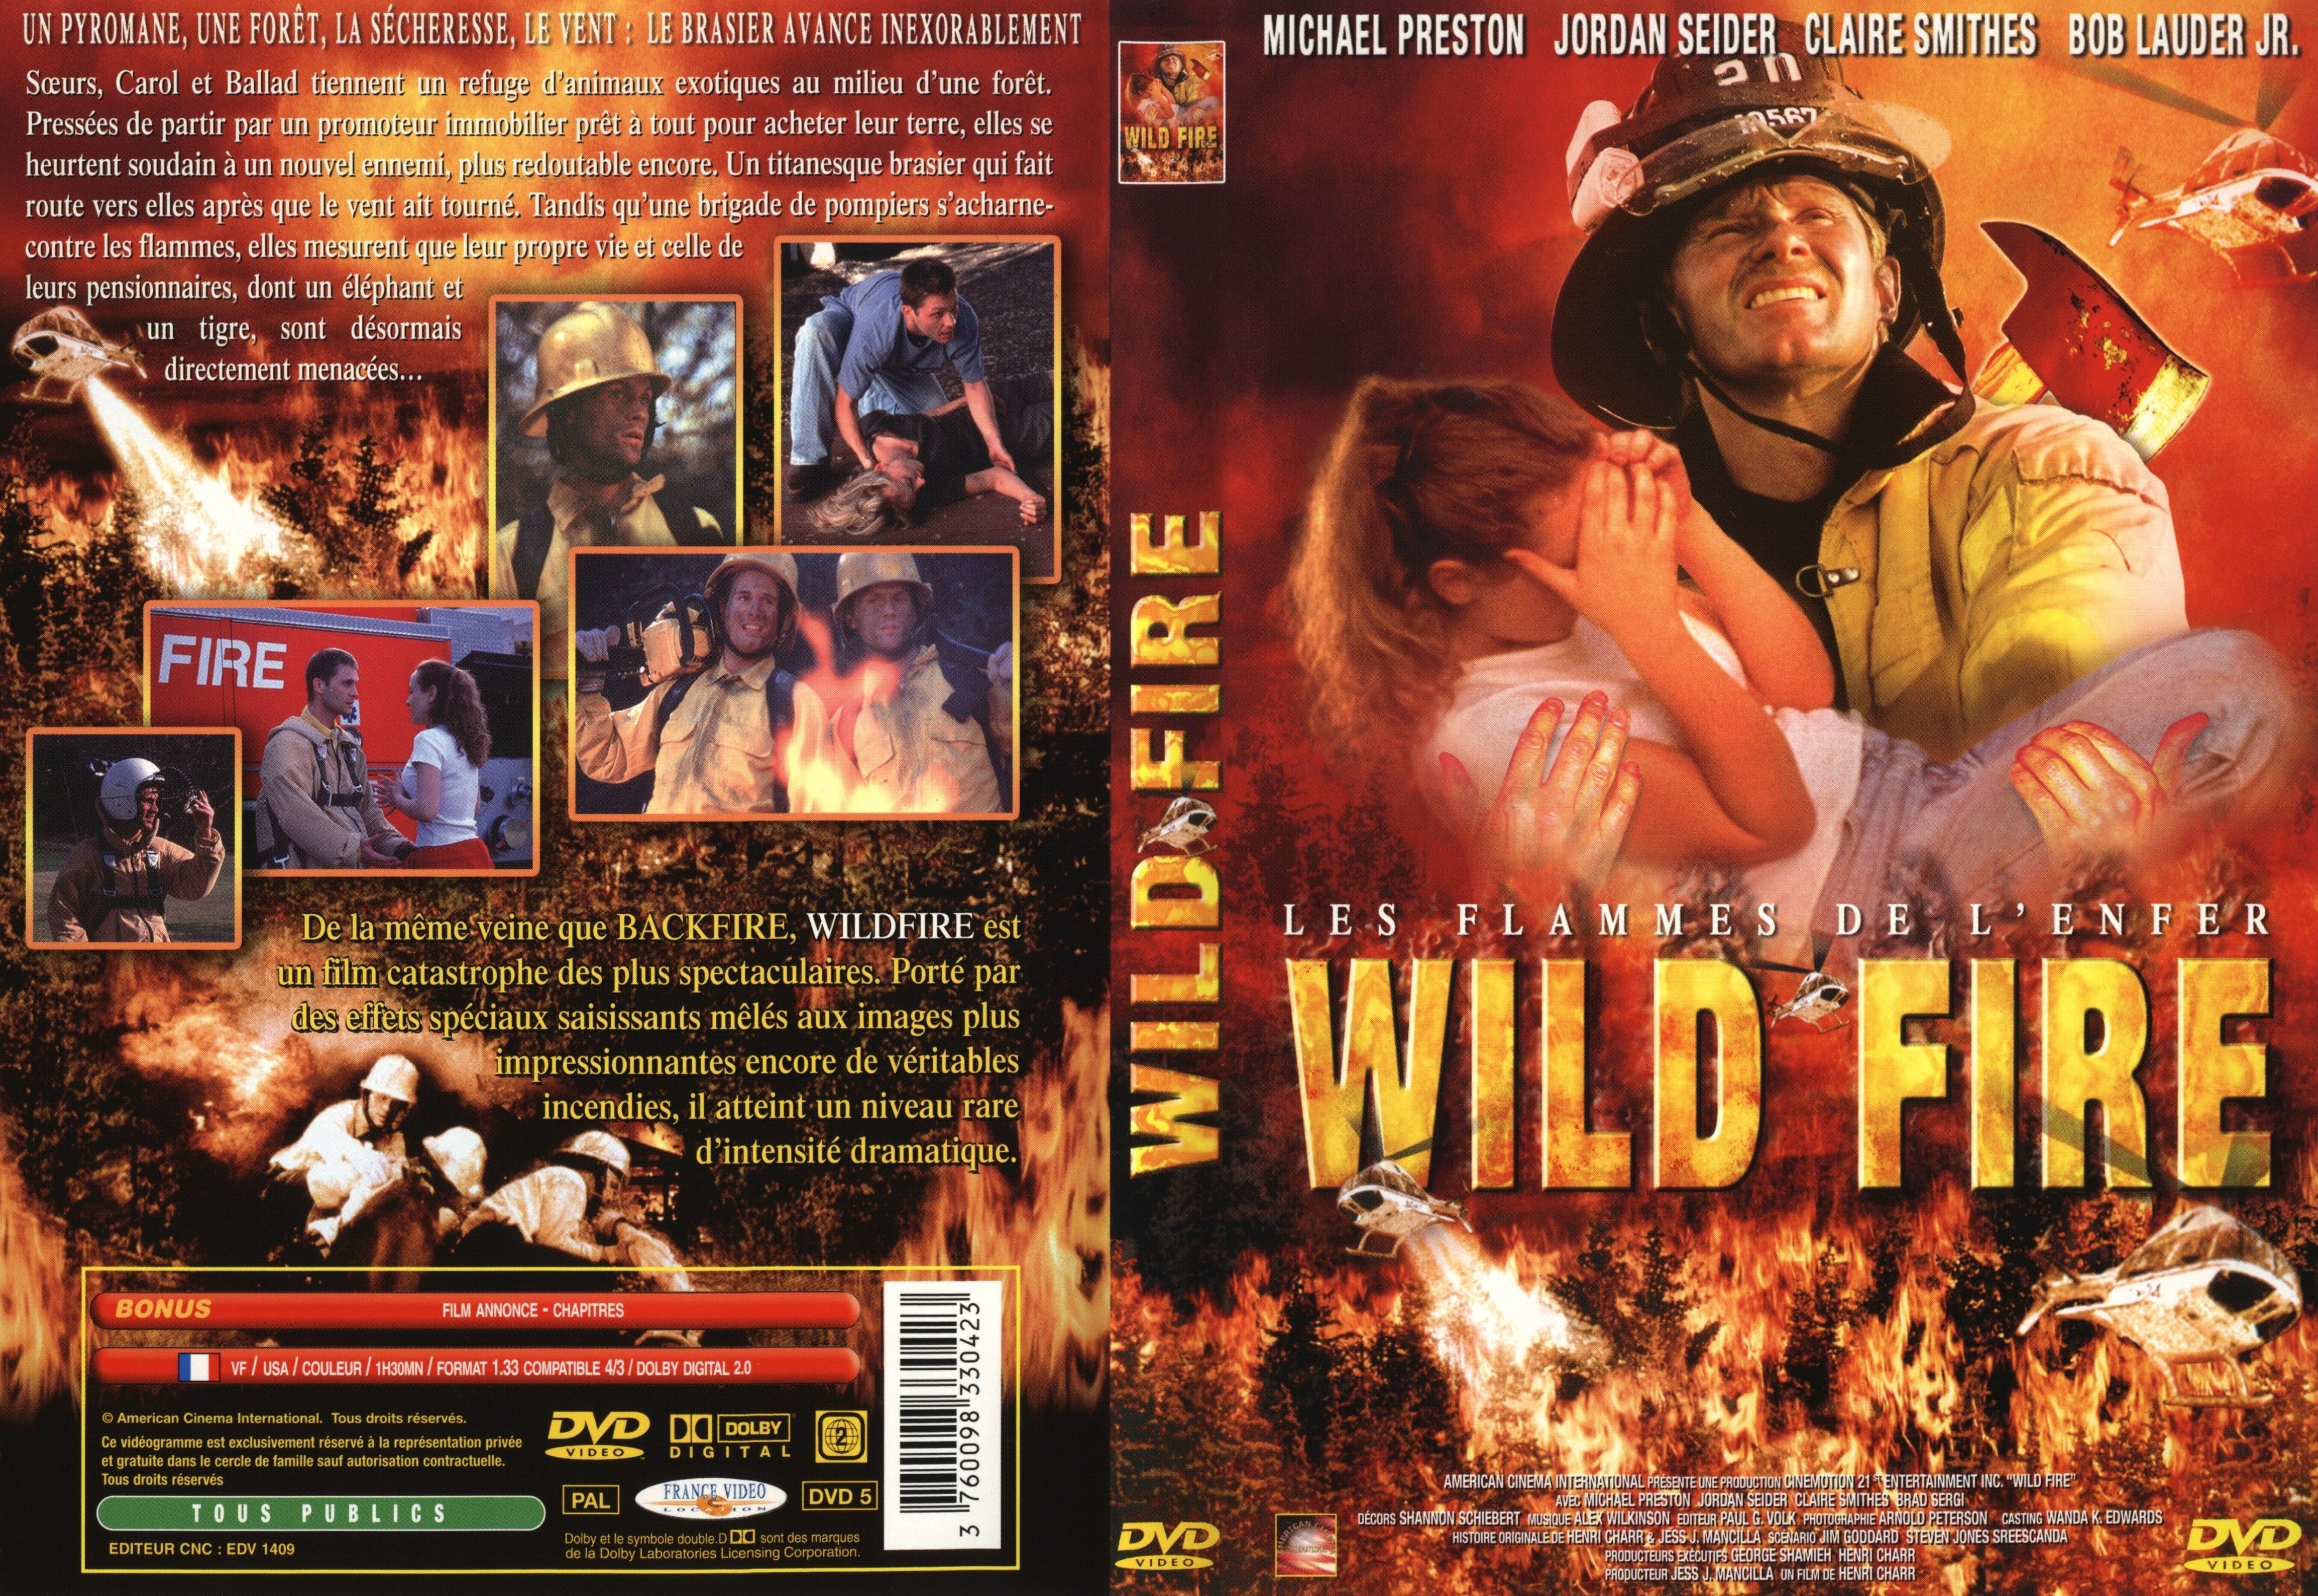 Jaquette DVD Wild fire